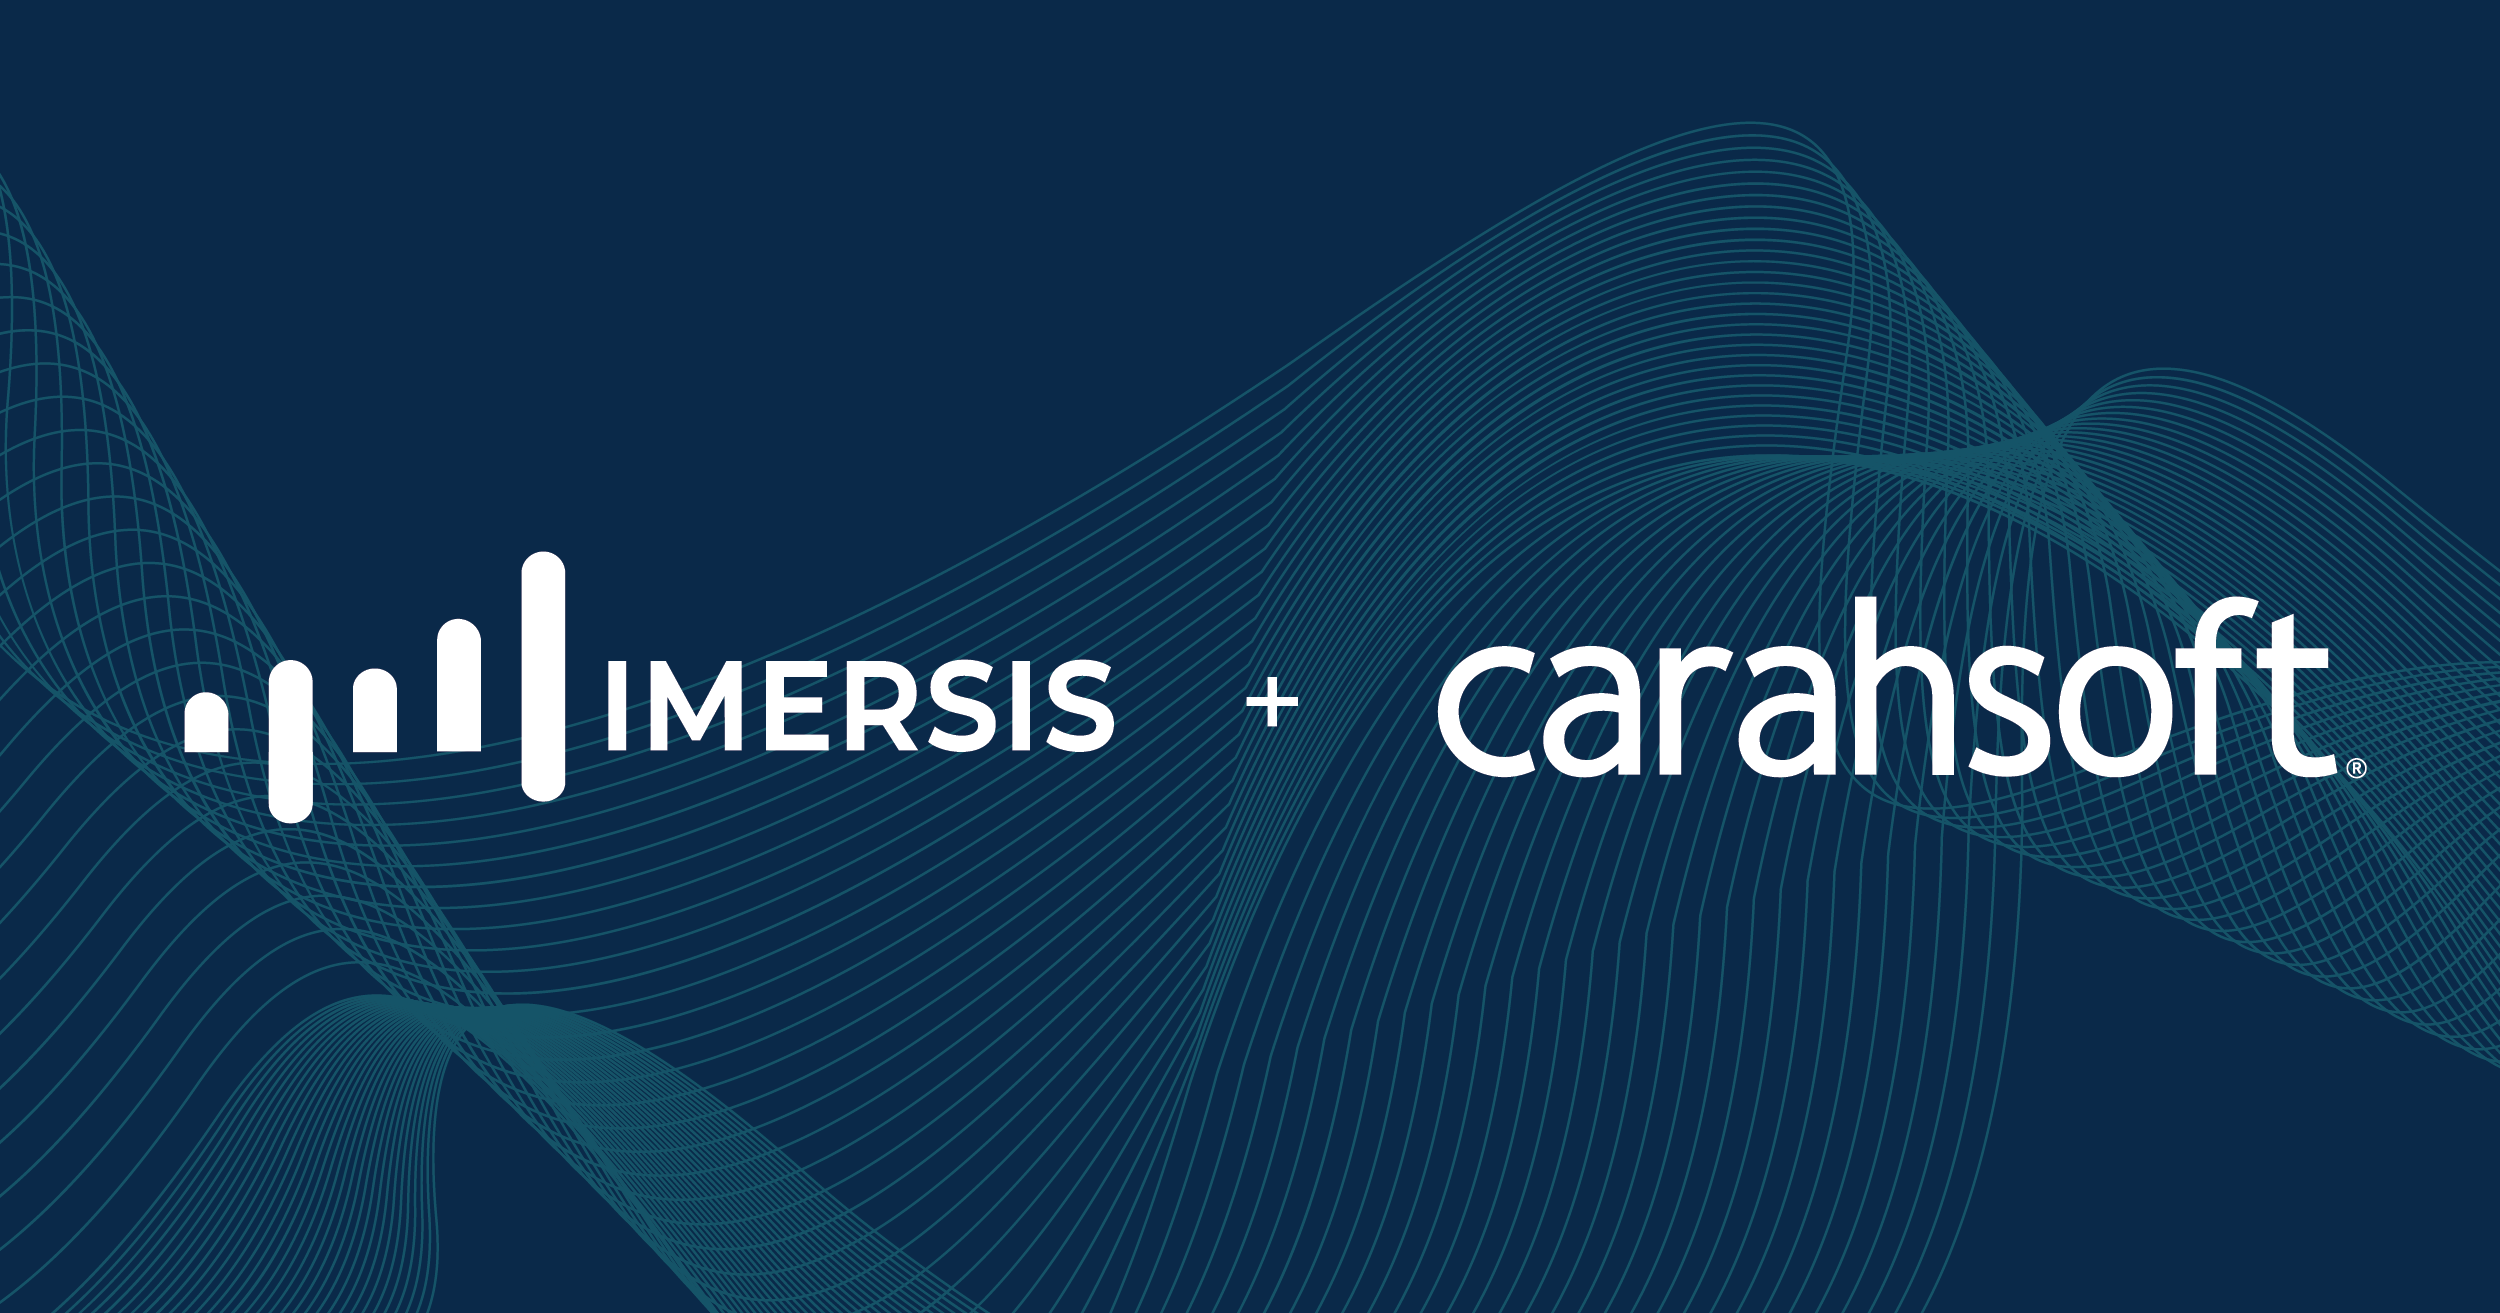 Imersis and Carahsoft logos